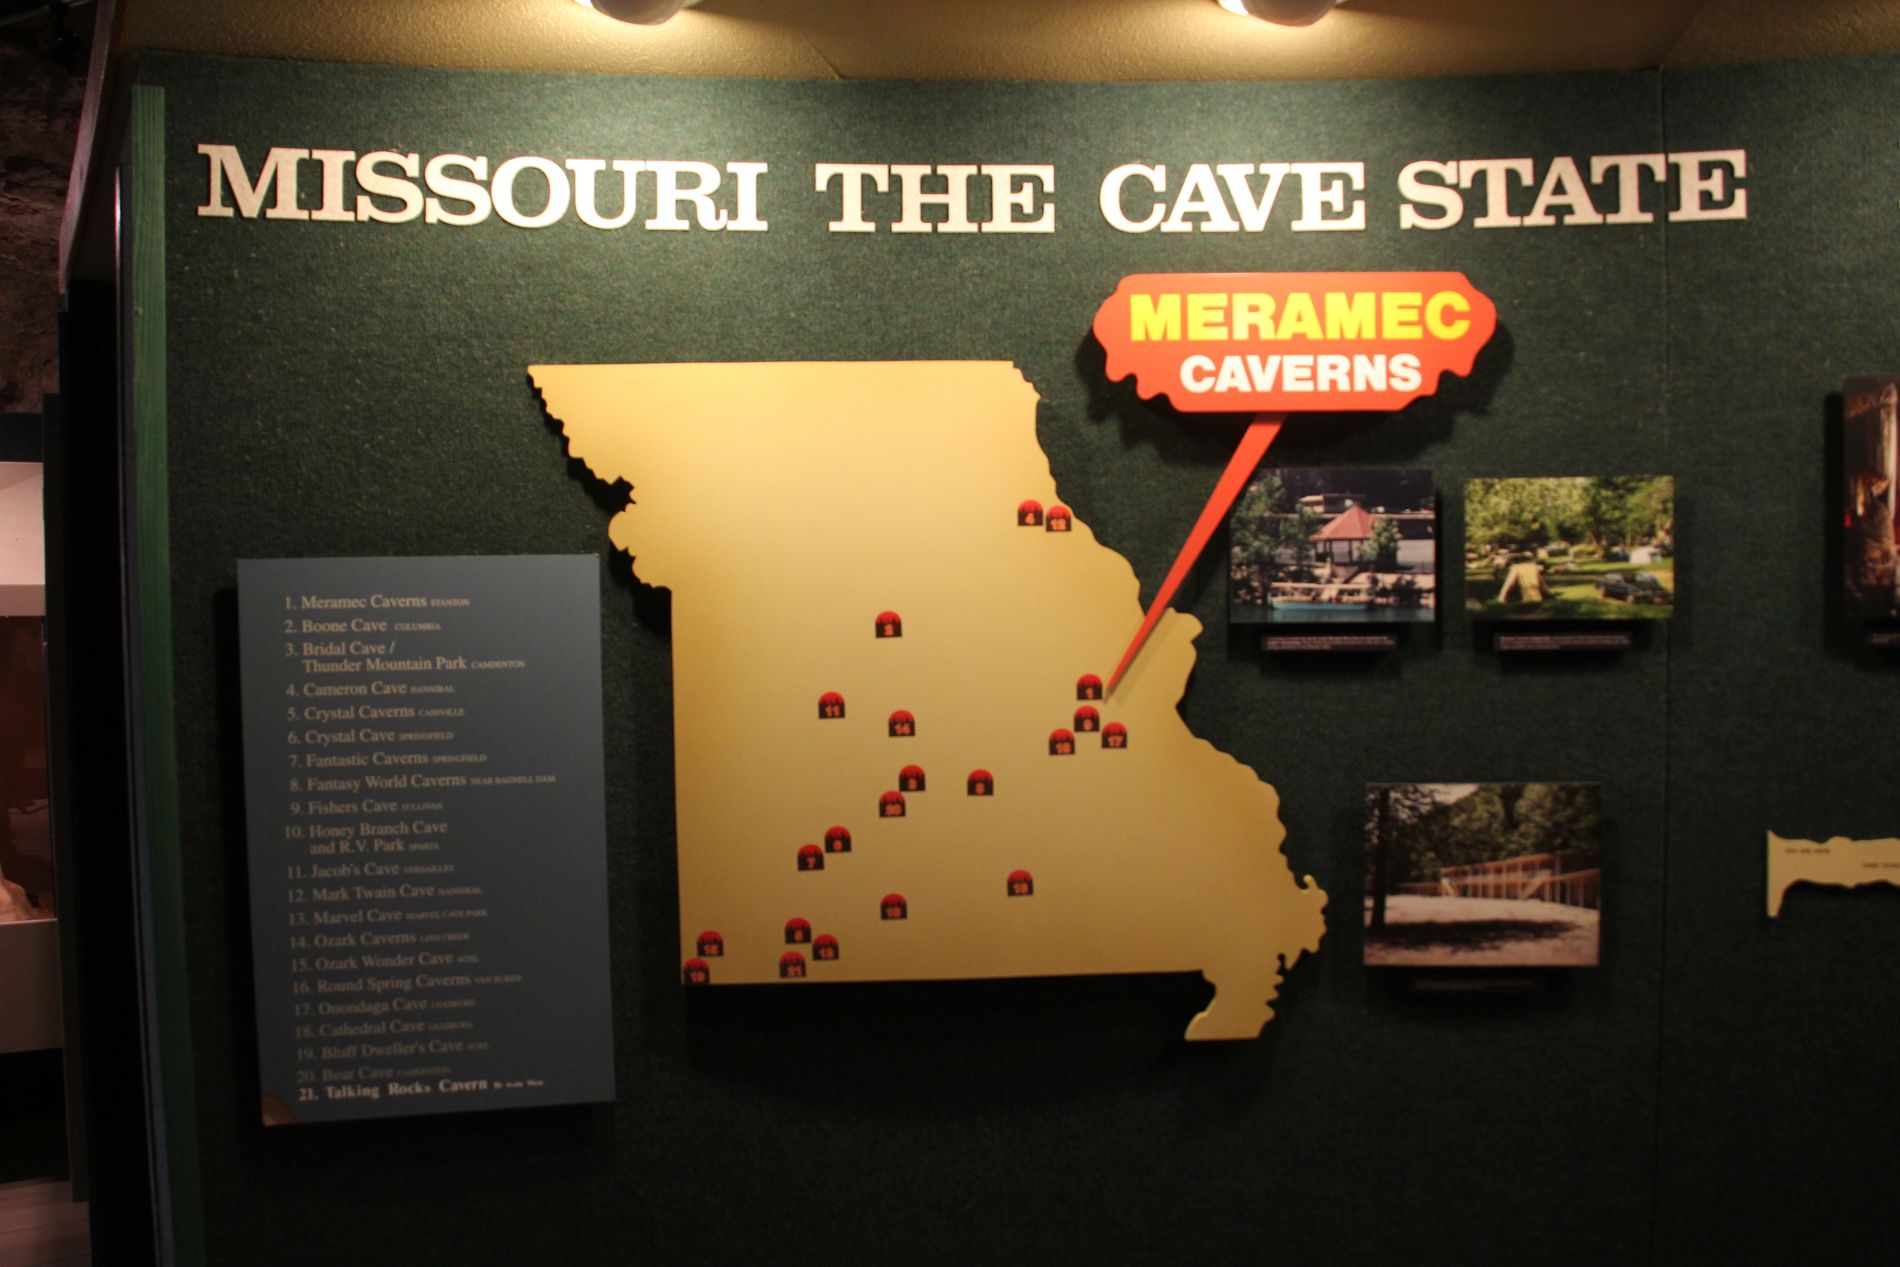 Meramec Caverns cave map in Stanton, Missouri